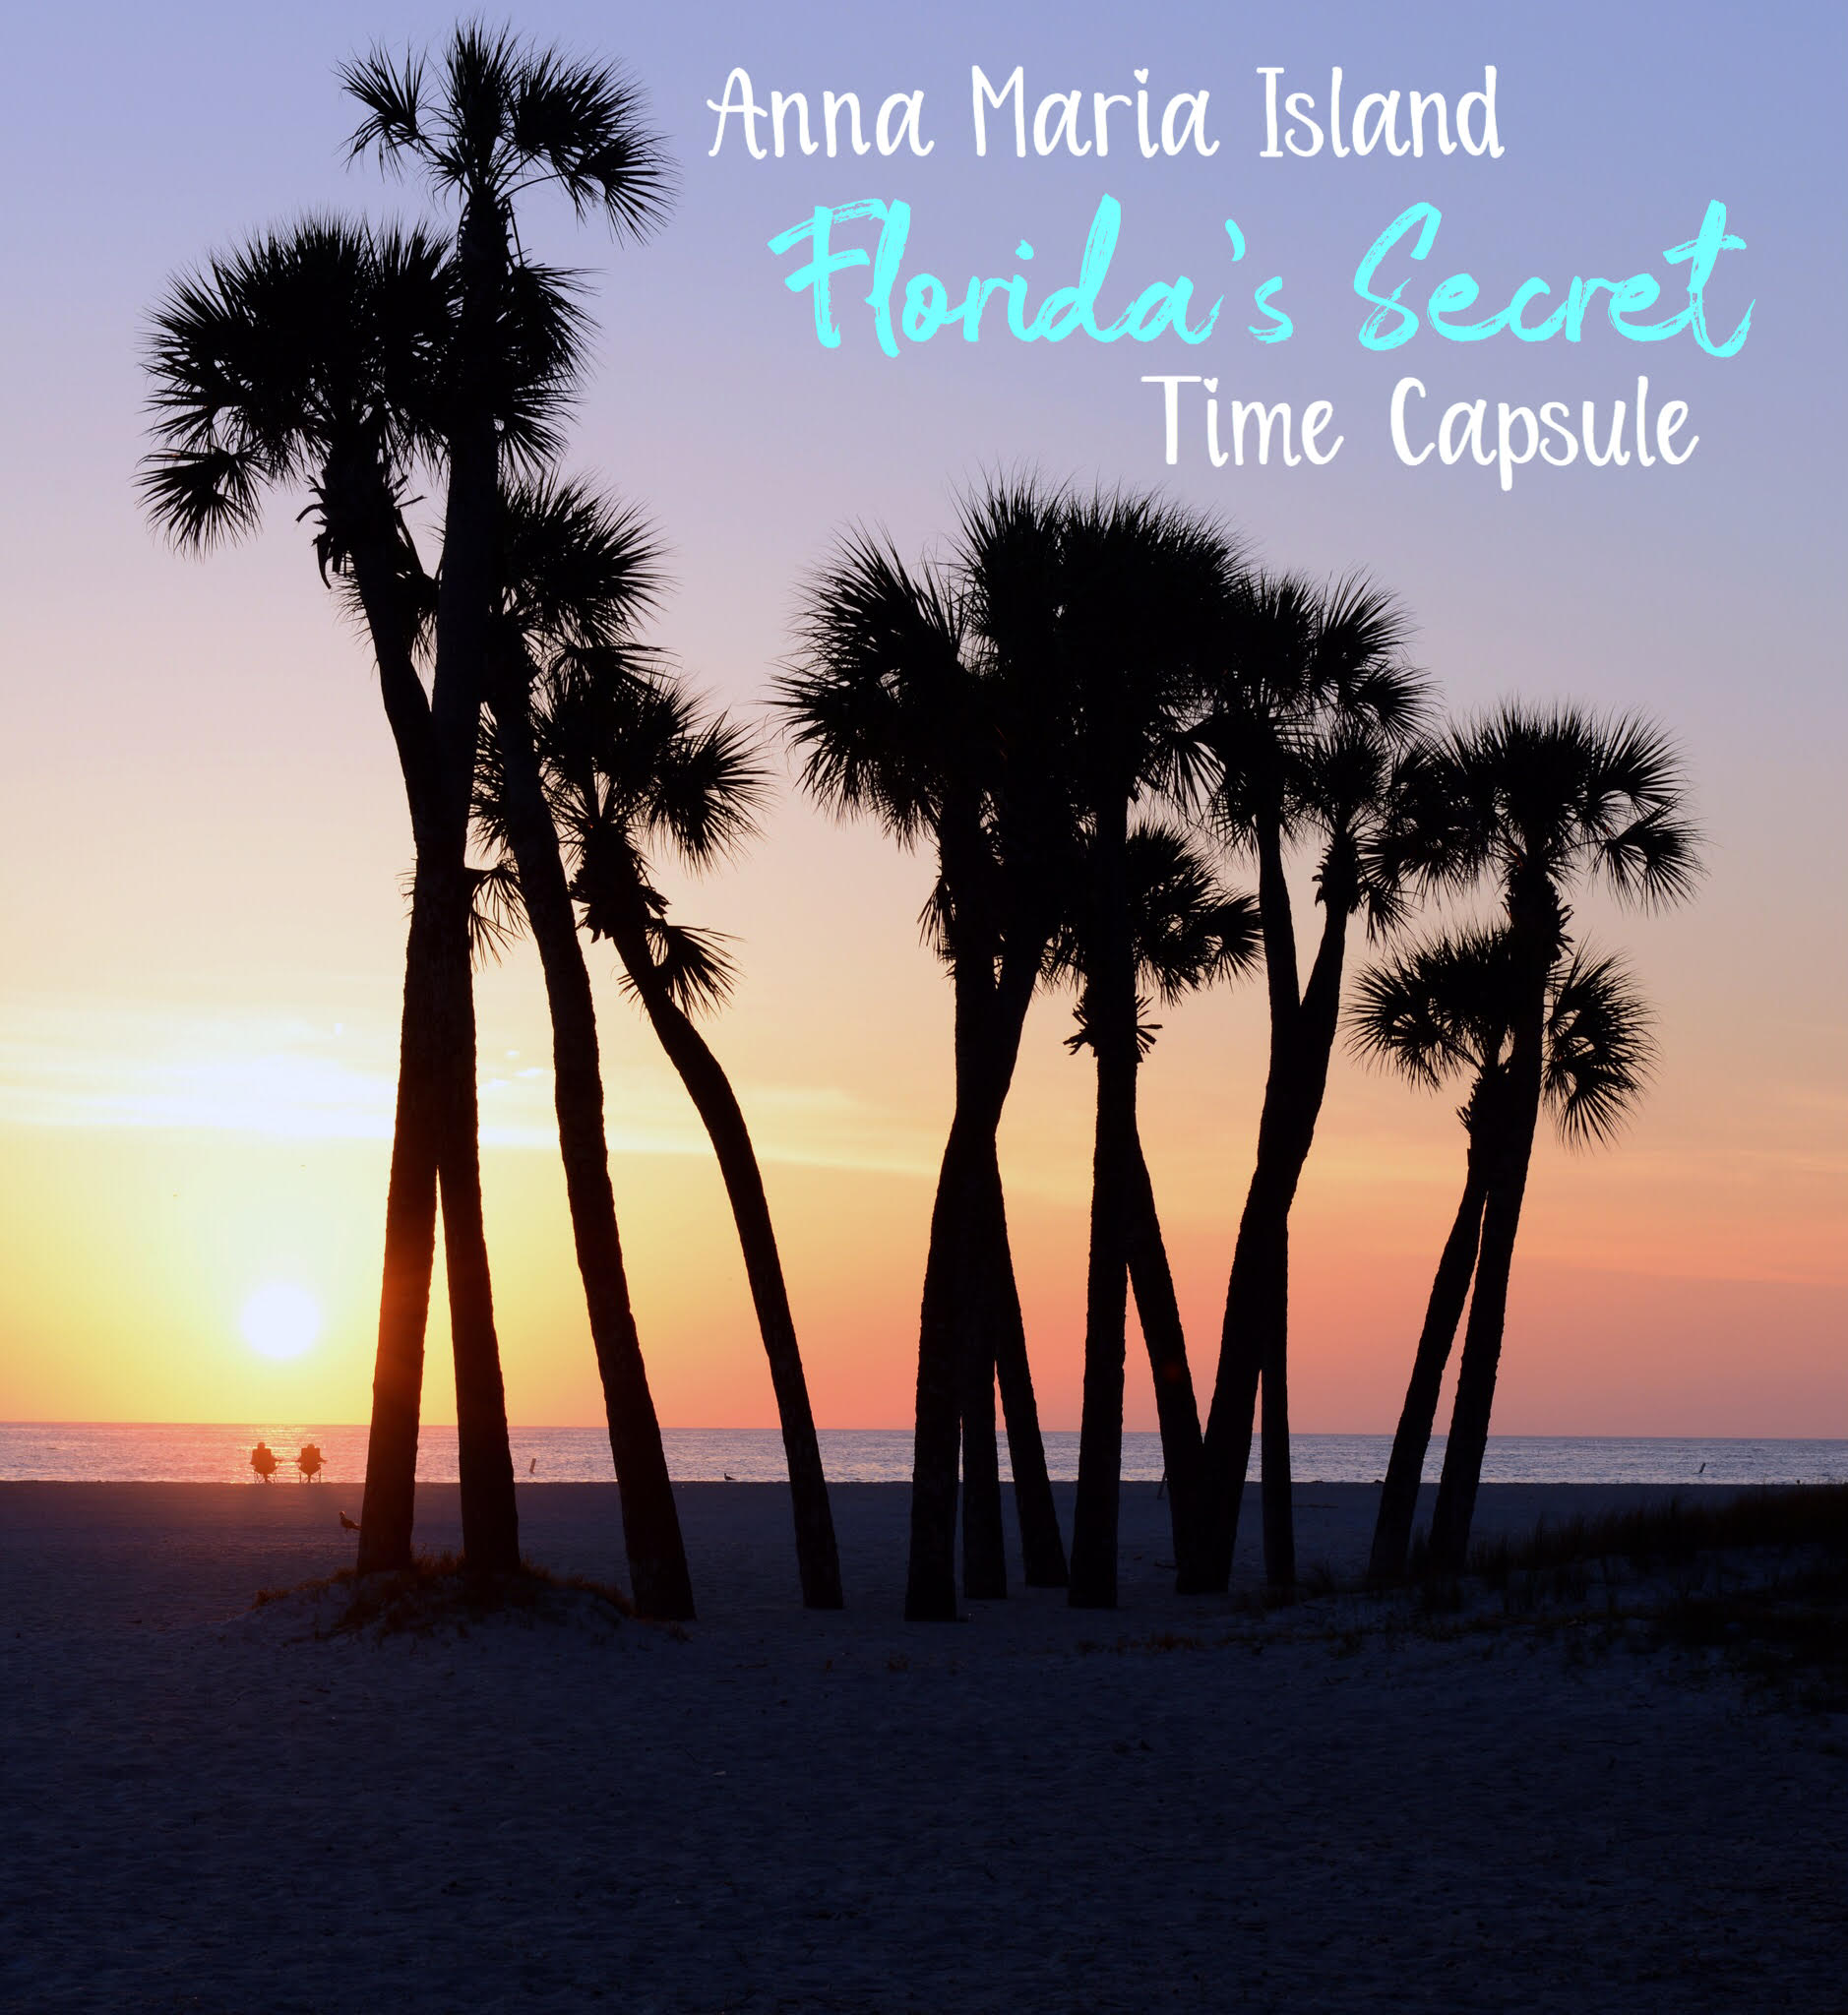 Anna Maria Island - Florida's Secret Time Capsule